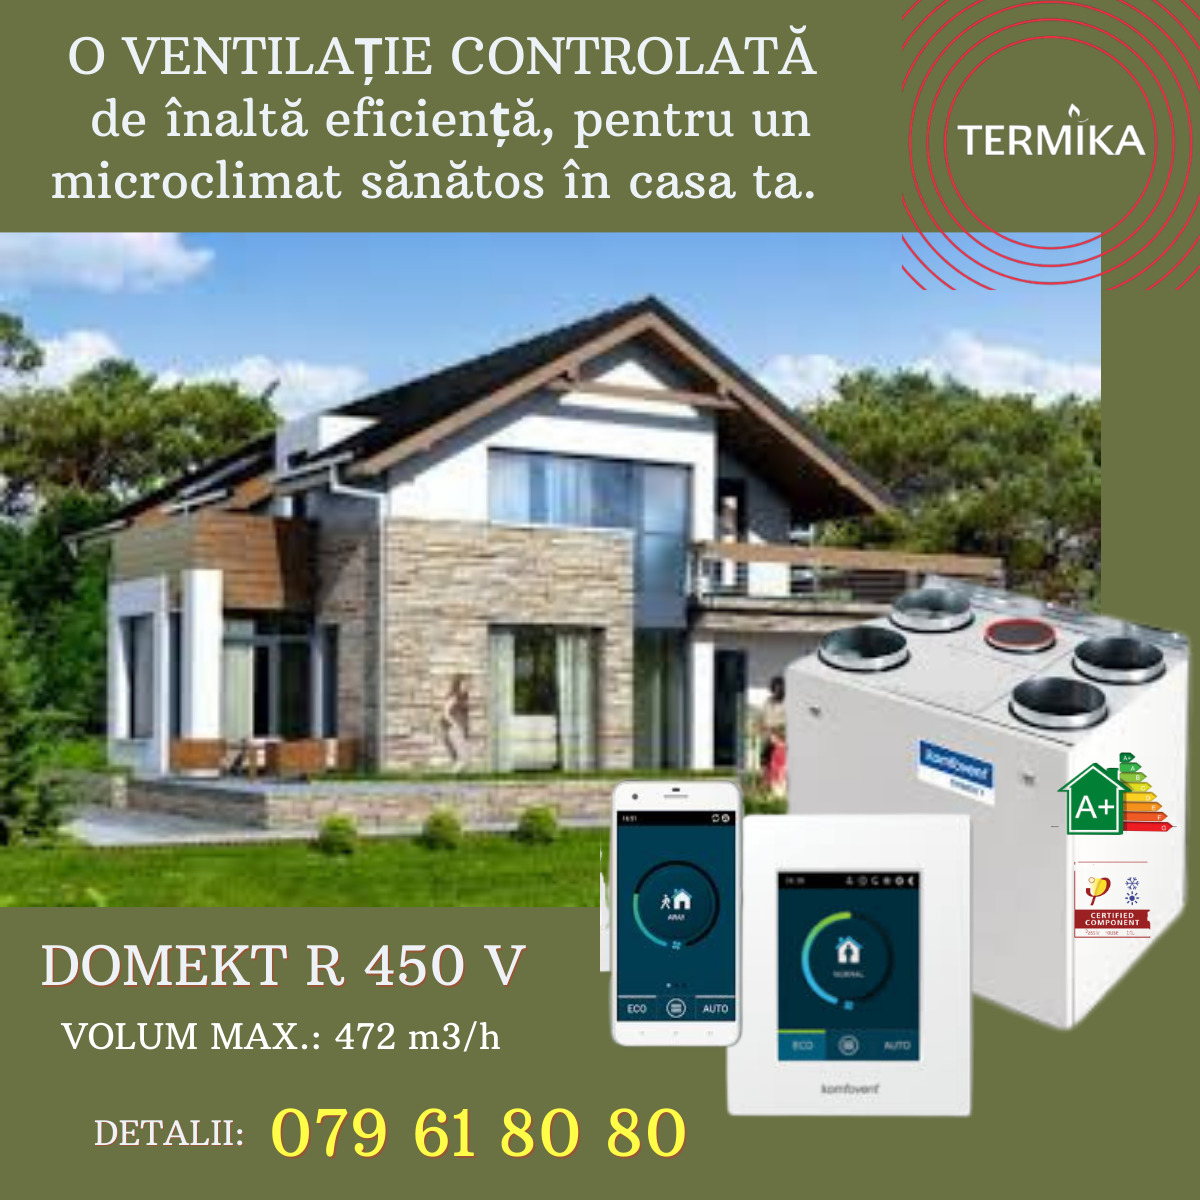 Центр Termika  предлагает в Кишиневе рекуператоры от компании Komfovent Domekt R 450 V foto 10